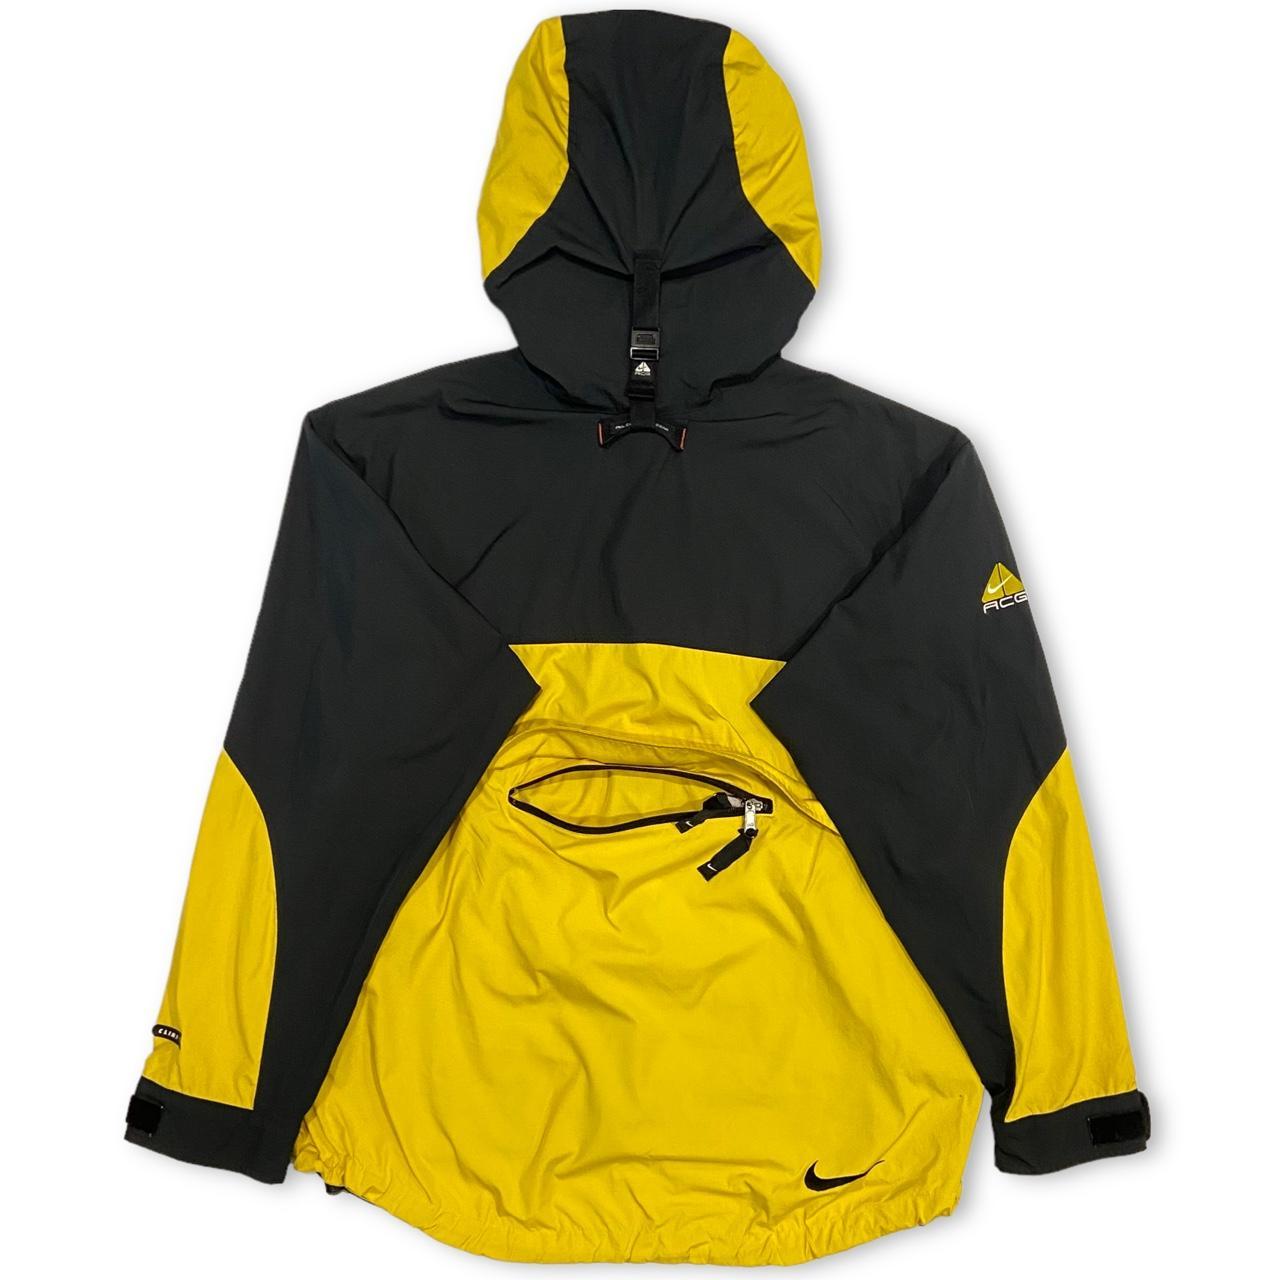 Vintage Nike ACG Jacket in yellow and black... - Depop